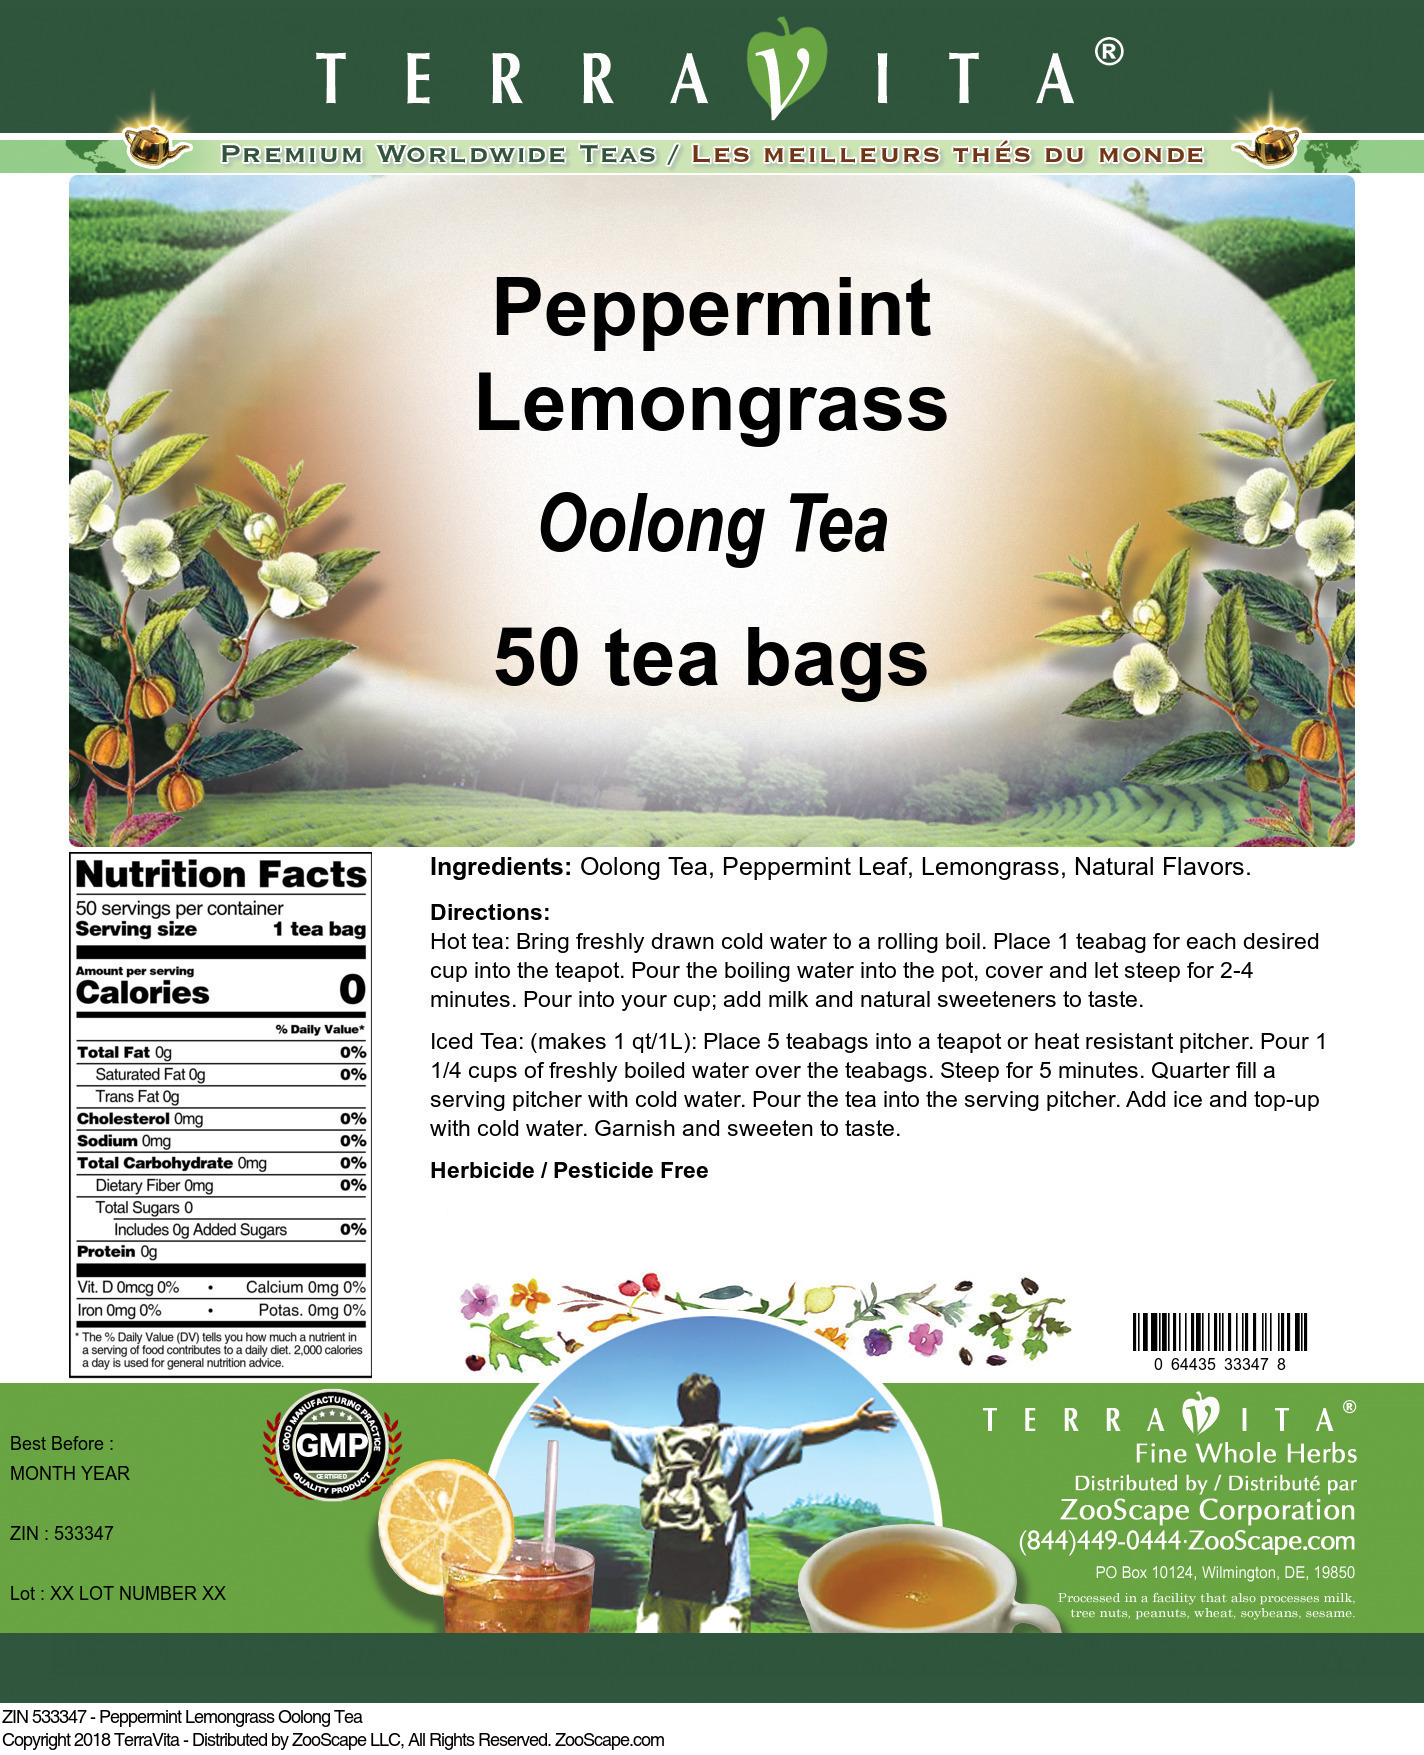 Peppermint Lemongrass Oolong Tea - Label